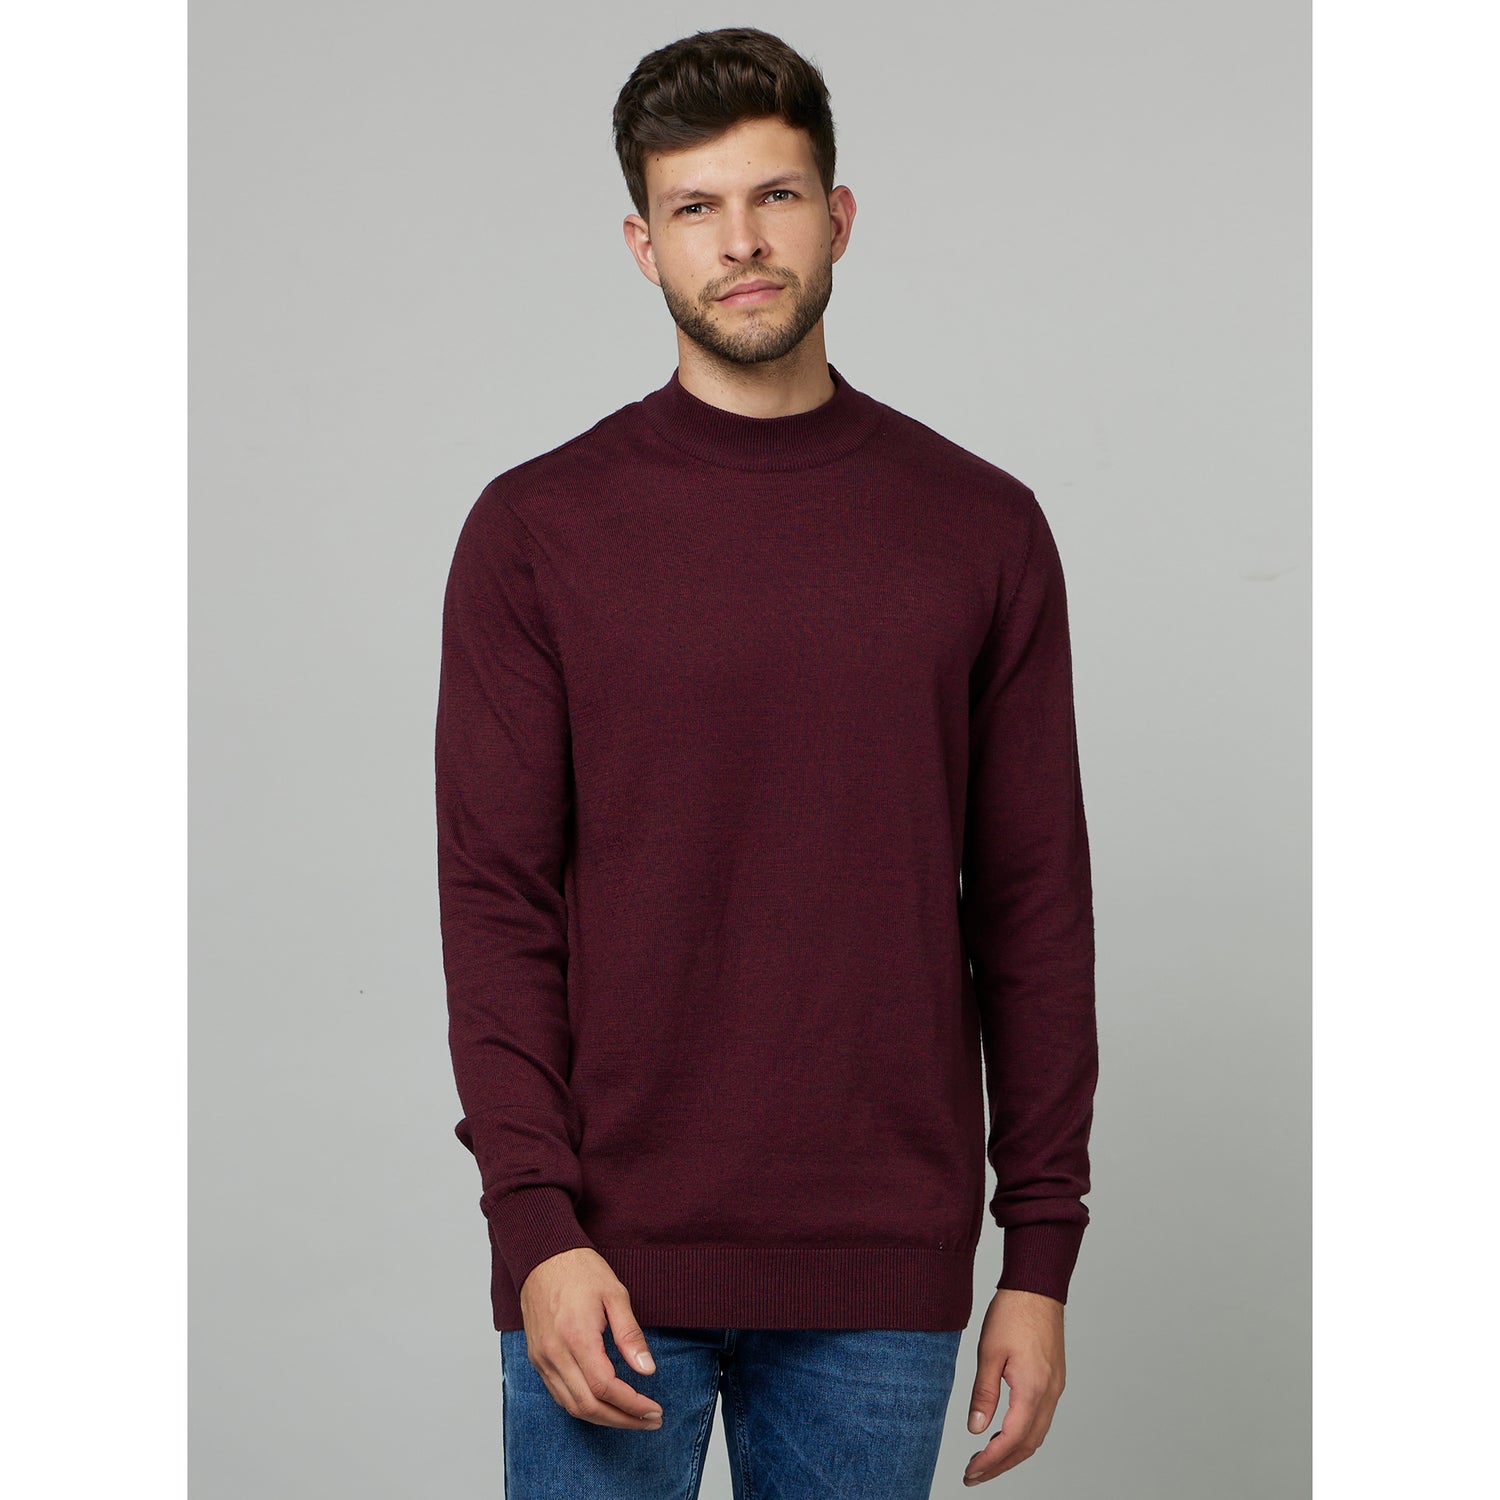 Burgundy Round Neck Cotton Pullover Sweater (FETURN)